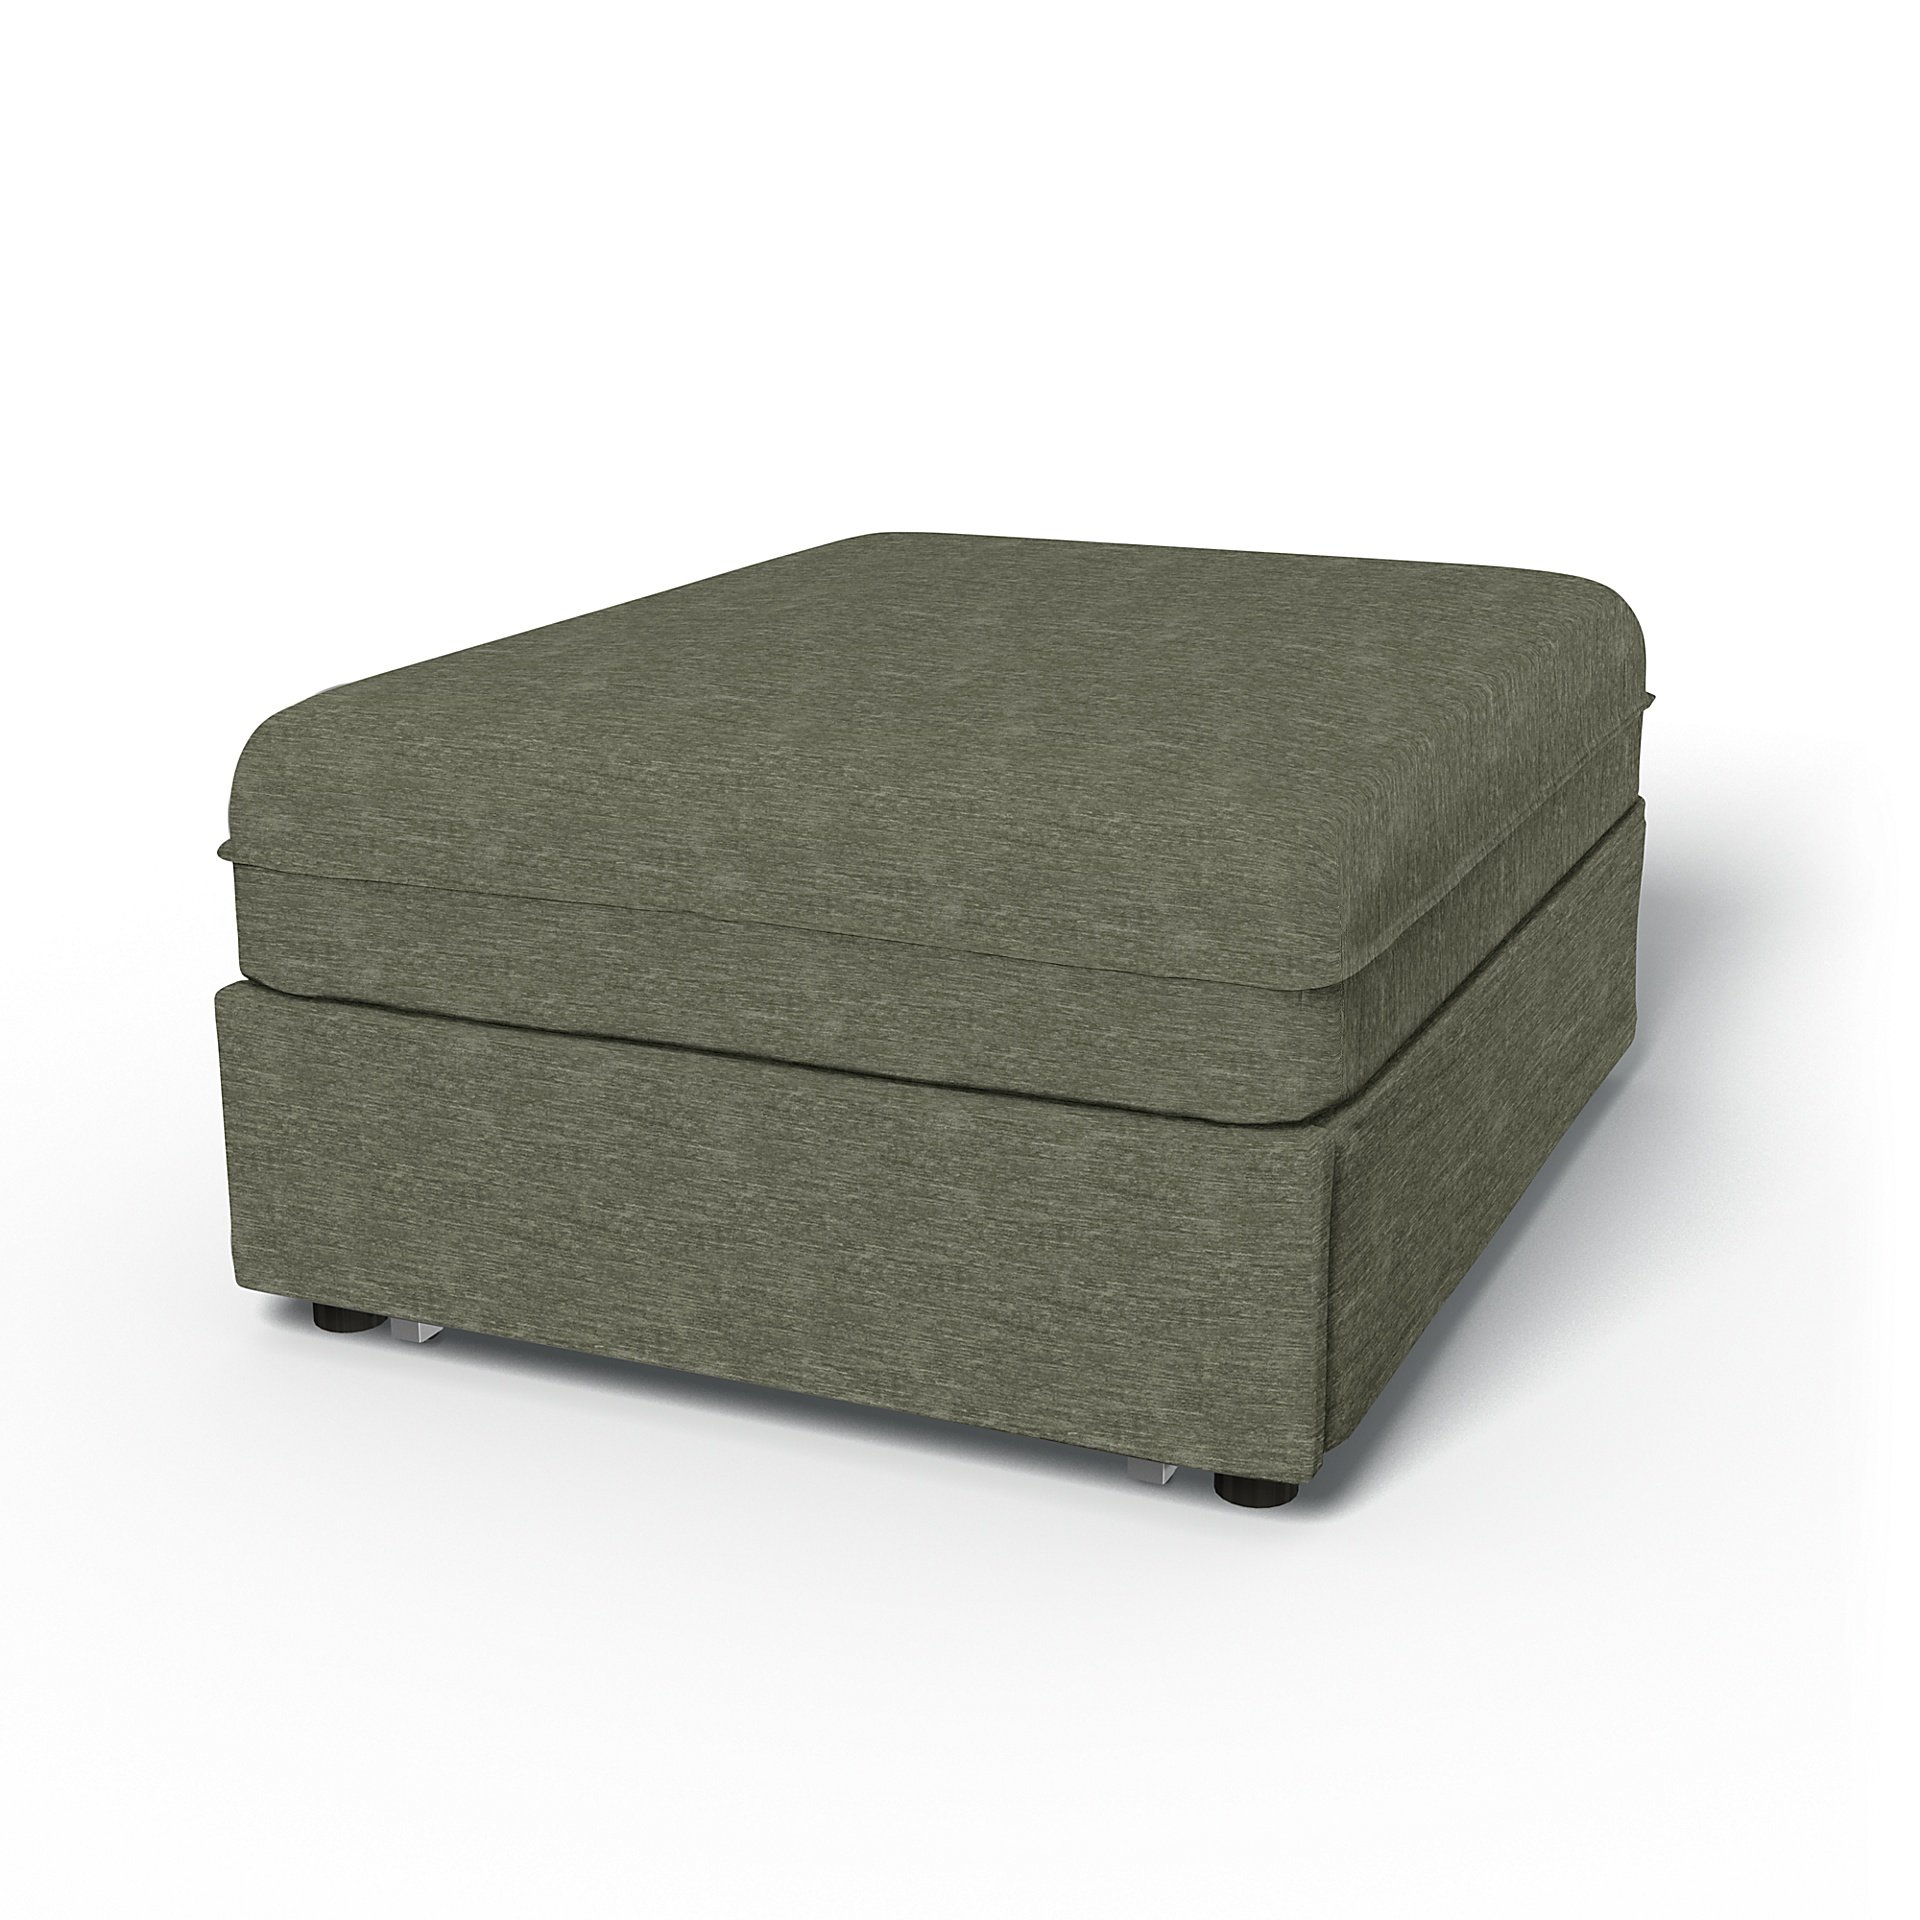 IKEA - Vallentuna Seat Module with Sofa Bed Cover 80x100cm 32x39in, Green Grey, Velvet - Bemz